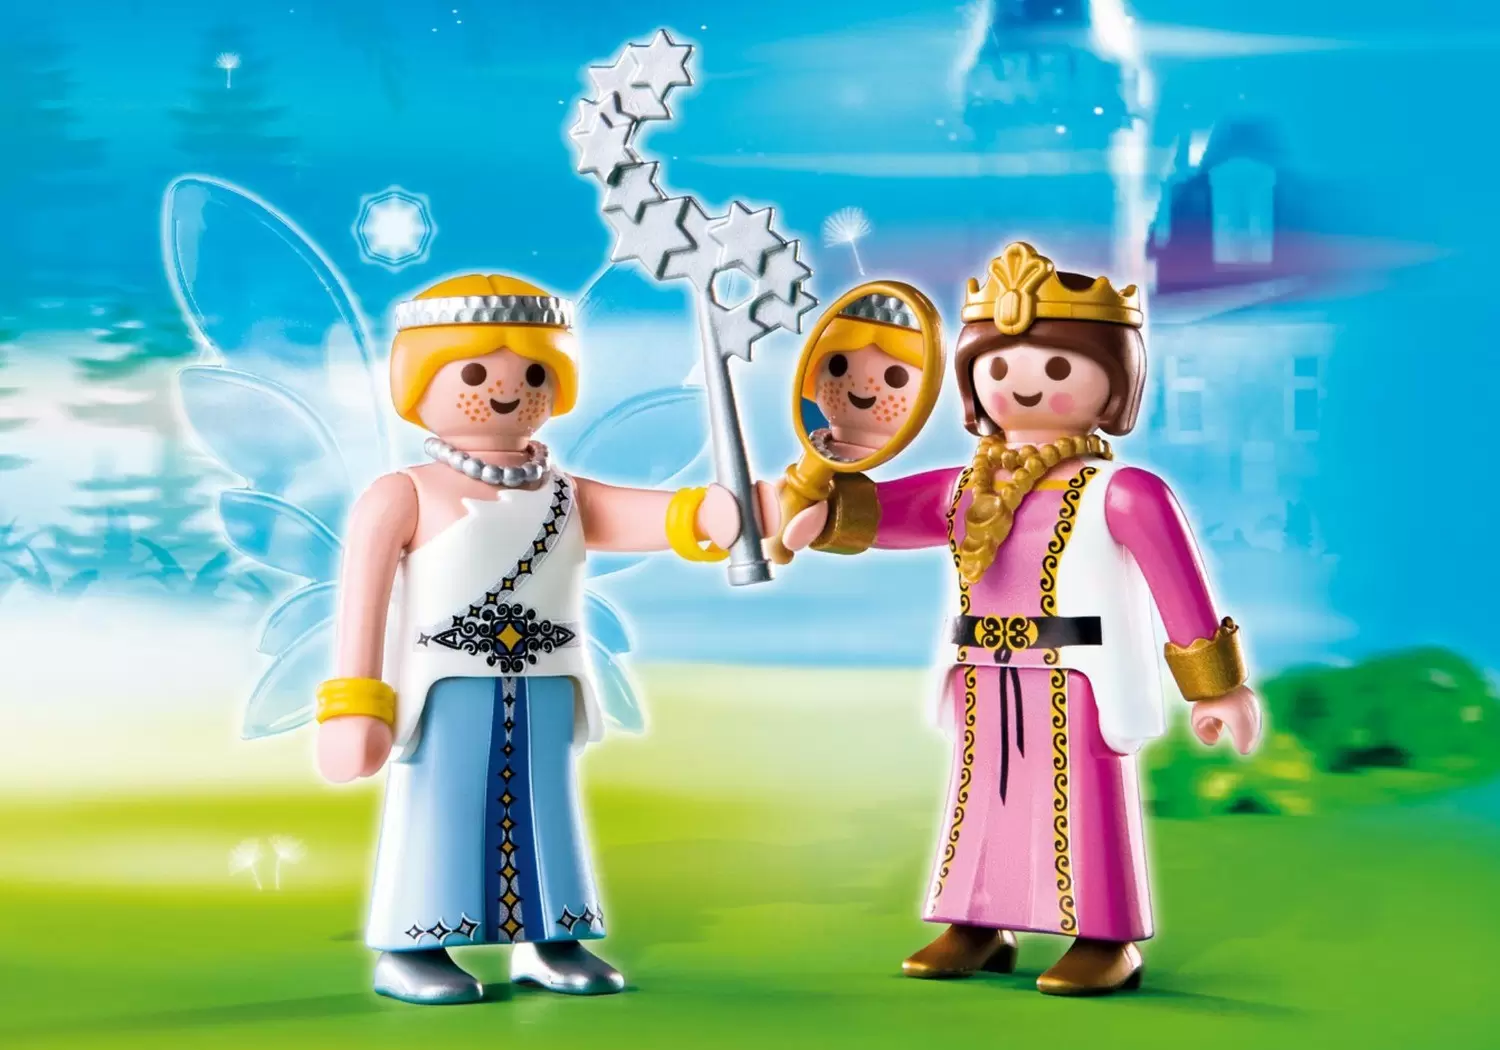 Playmobil Princess - Fairy and Princess